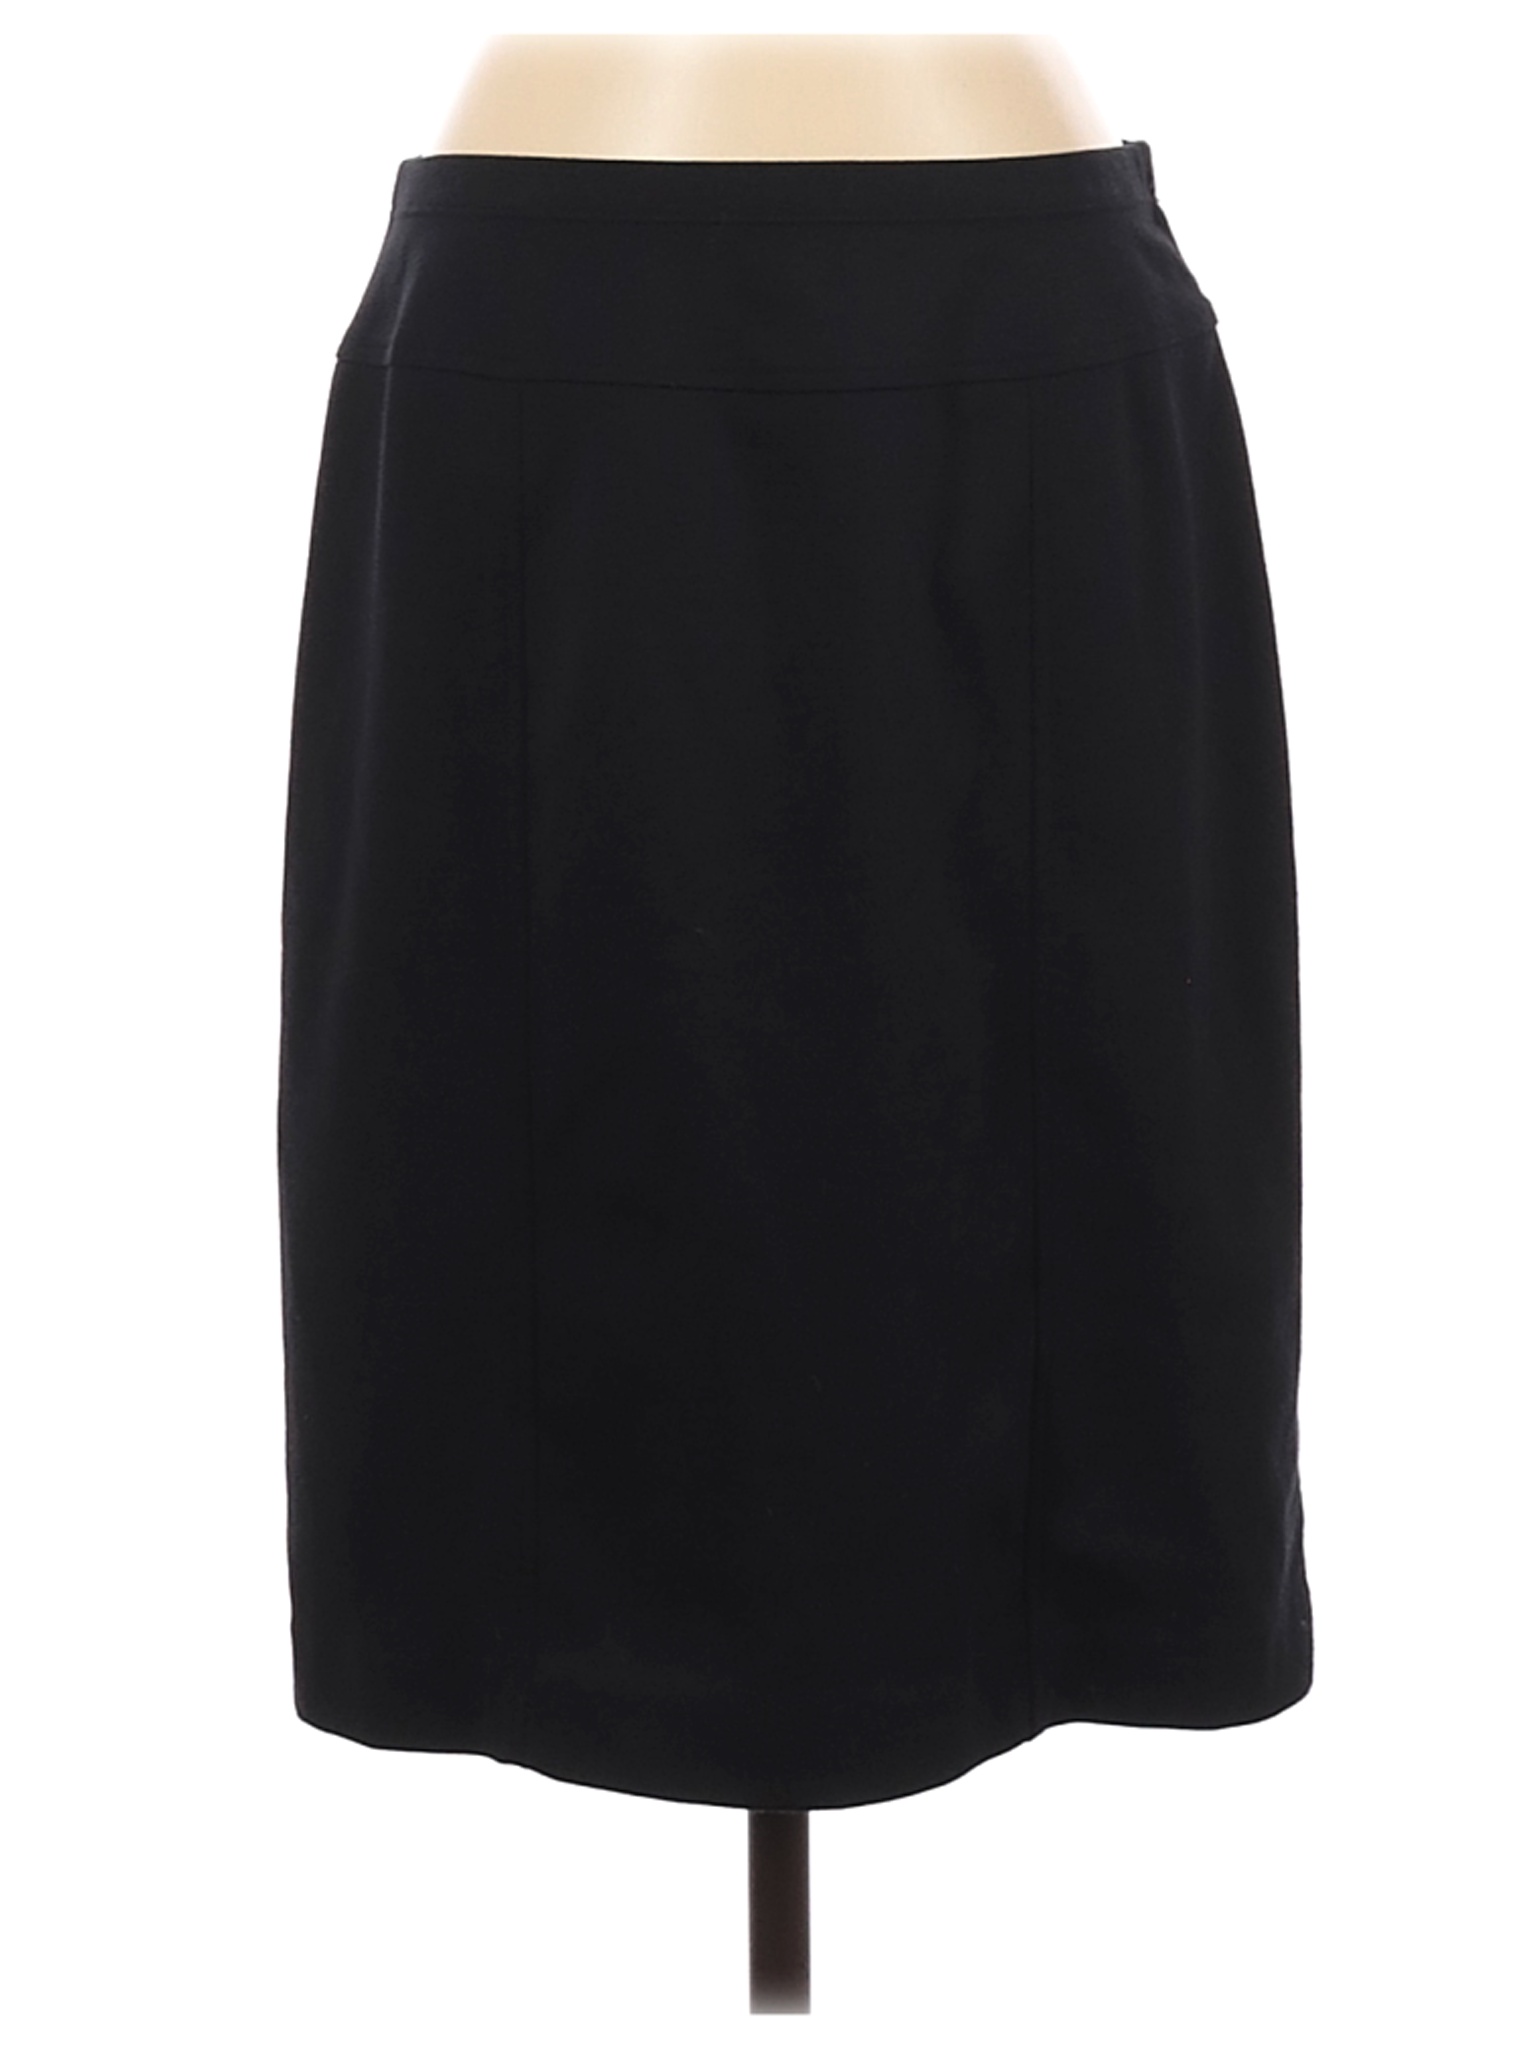 Ellen Tracy Women Black Casual Skirt M | eBay